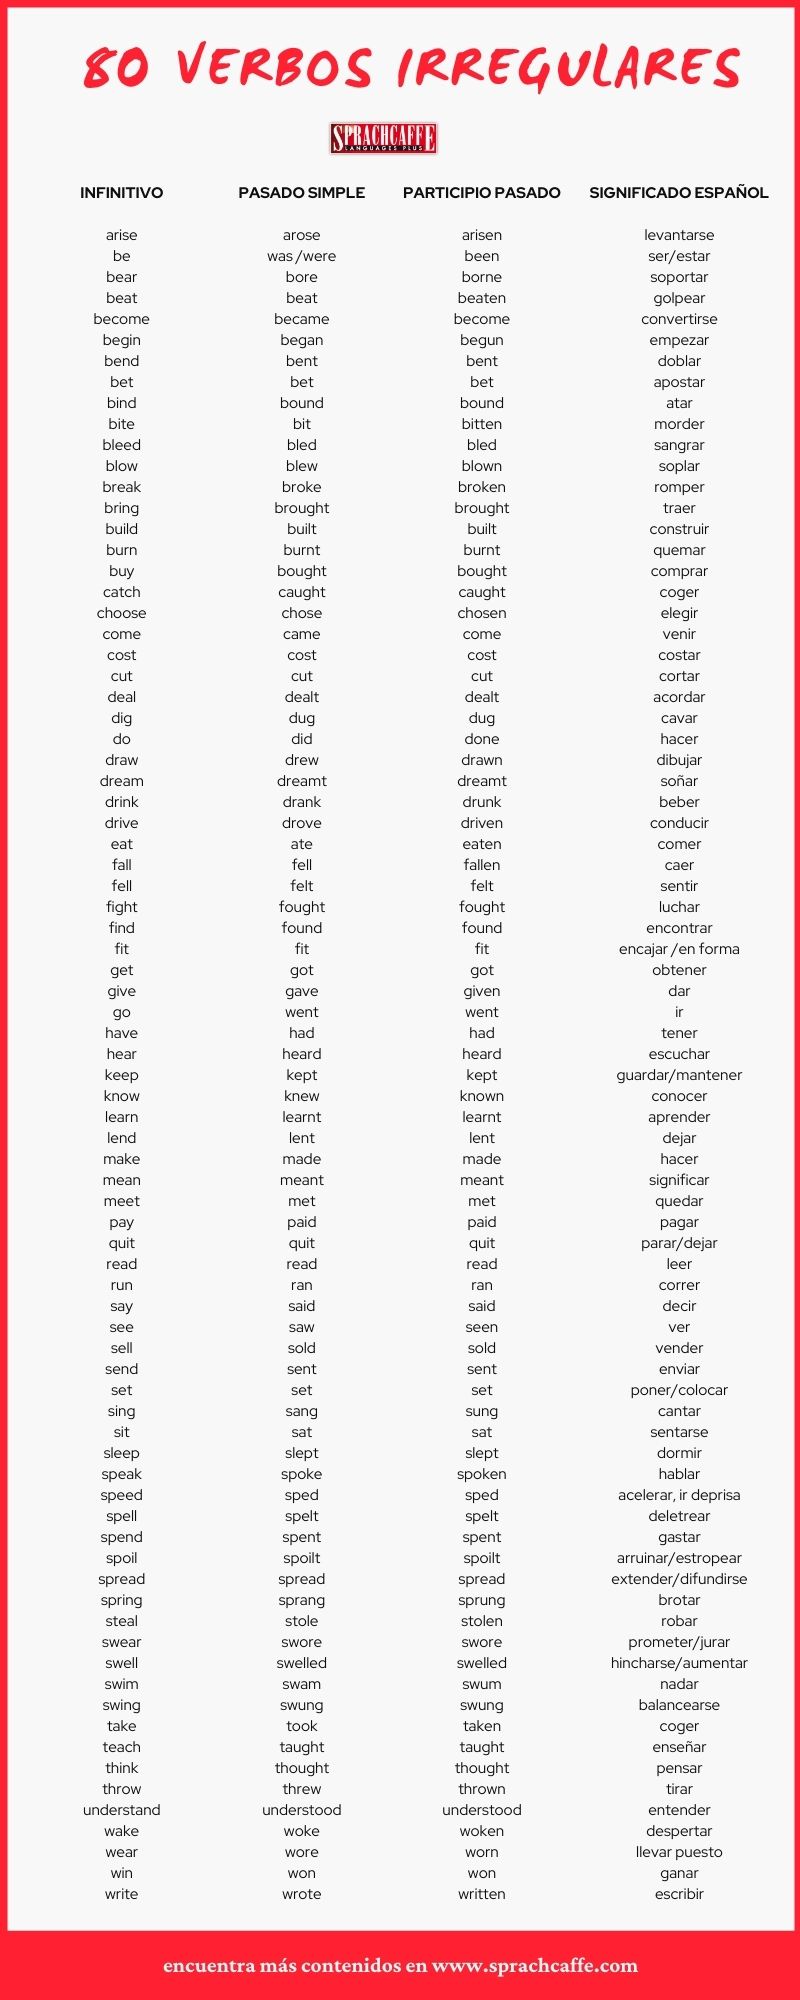 80 verbos irregulares